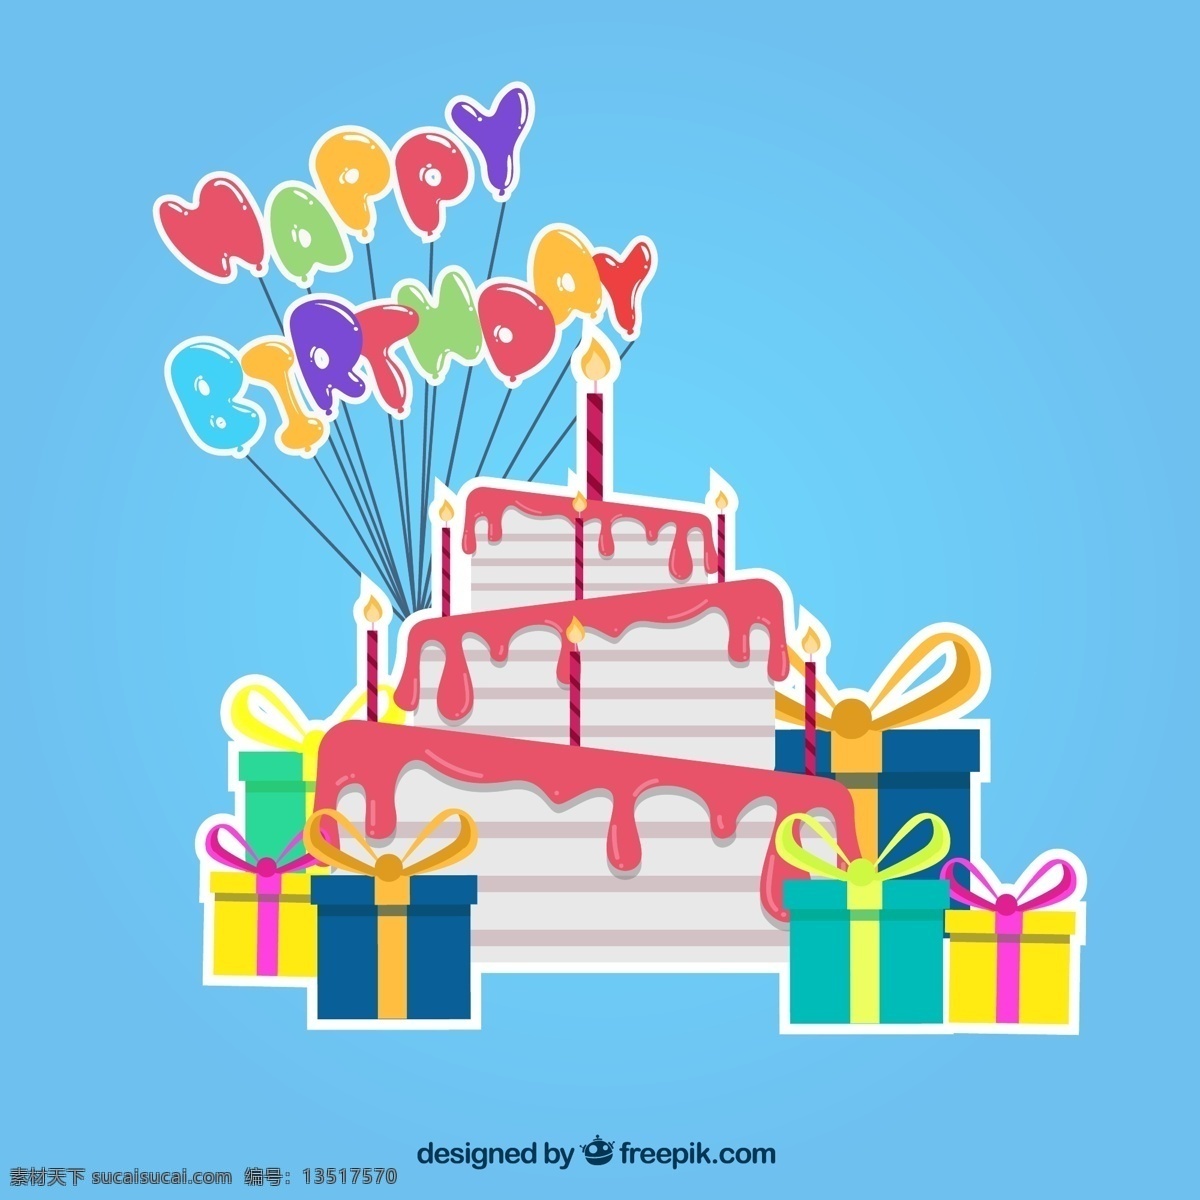 彩色 生日蛋糕 礼物 礼盒 贴纸 气球 矢量图 矢量 高清图片